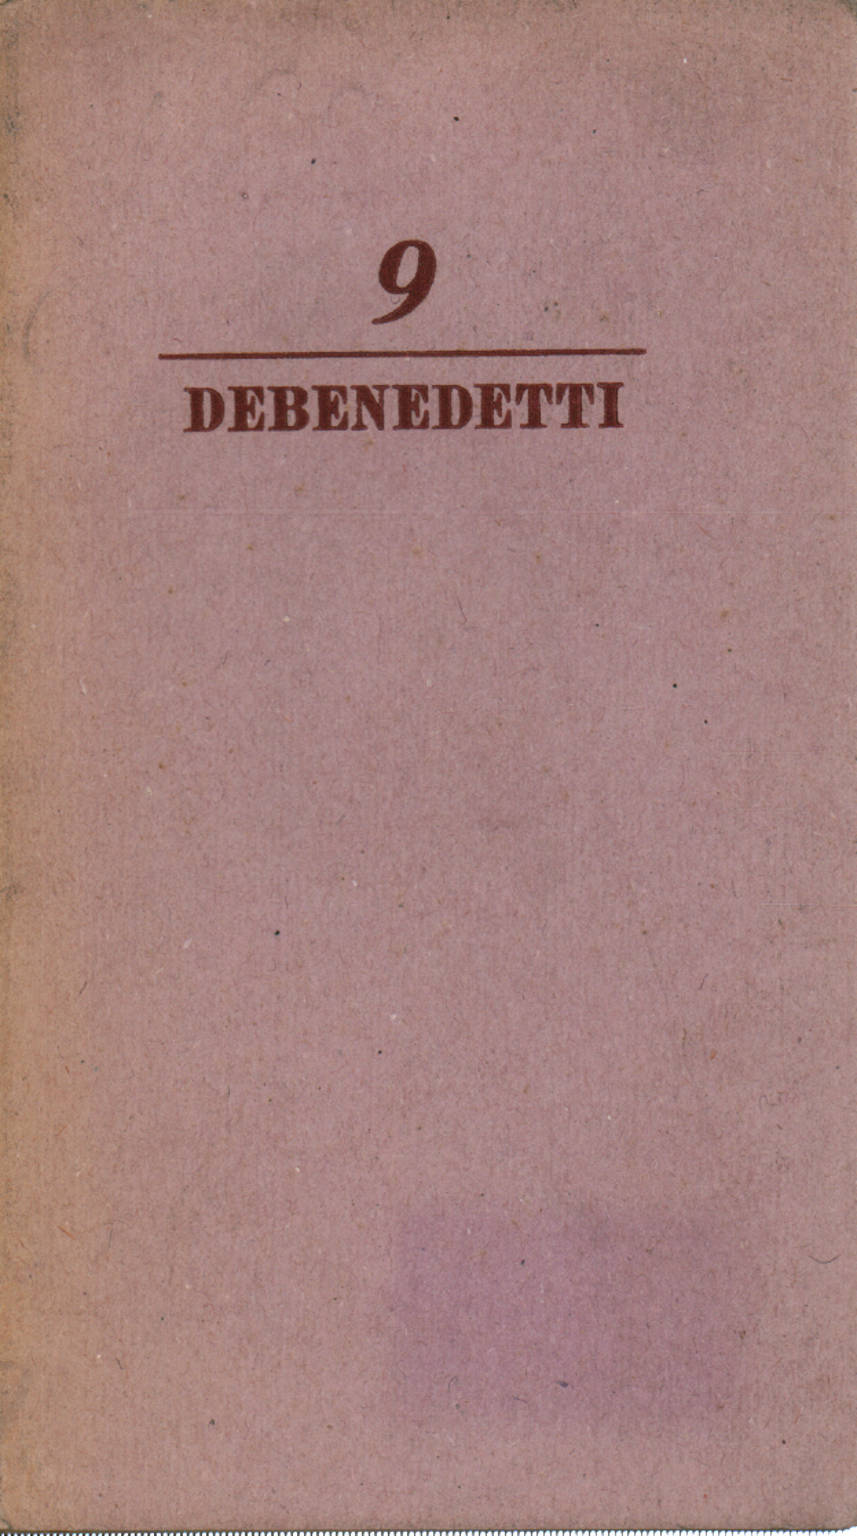 16 de octubre de 1943, Giacomo Debenedetti